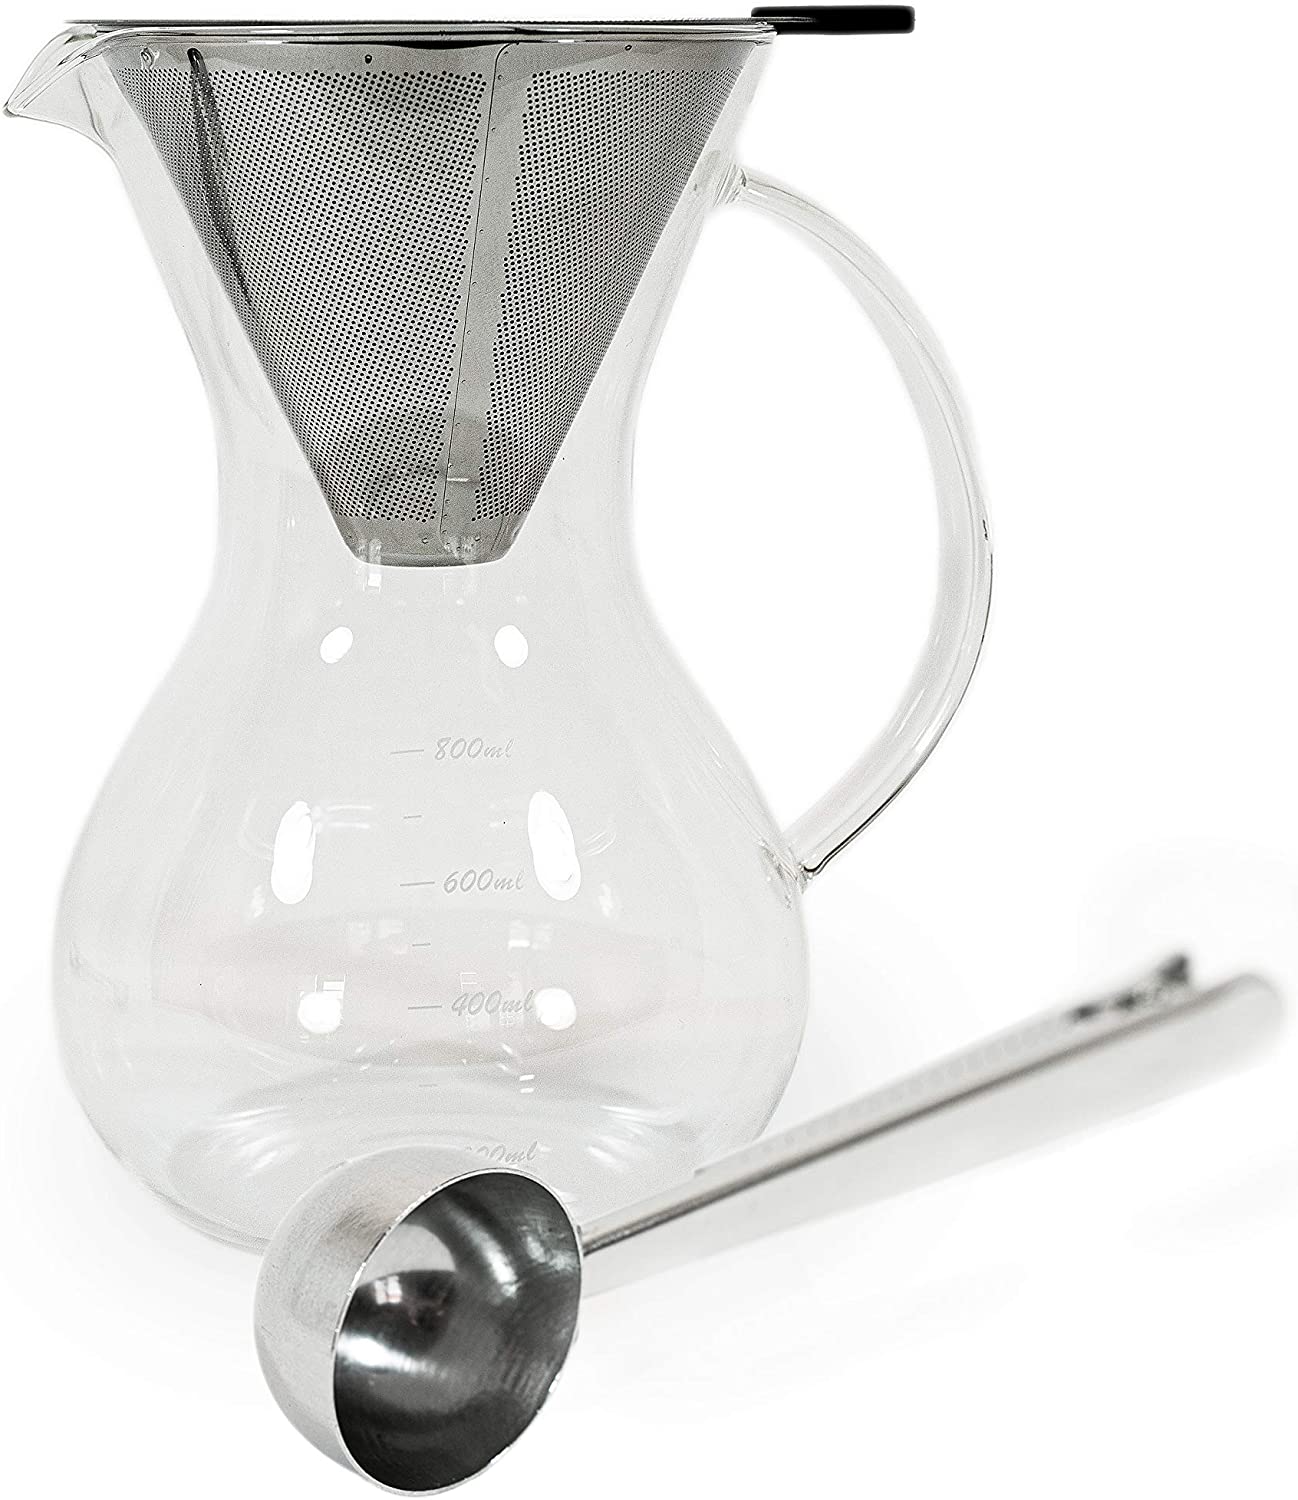 SEÑOR MOKKA Senor Mocha/Coffee Maker/Coffee Maker Glass with Filter + Coffee Spoon/Coffee Measuring Spoon (800 ml)